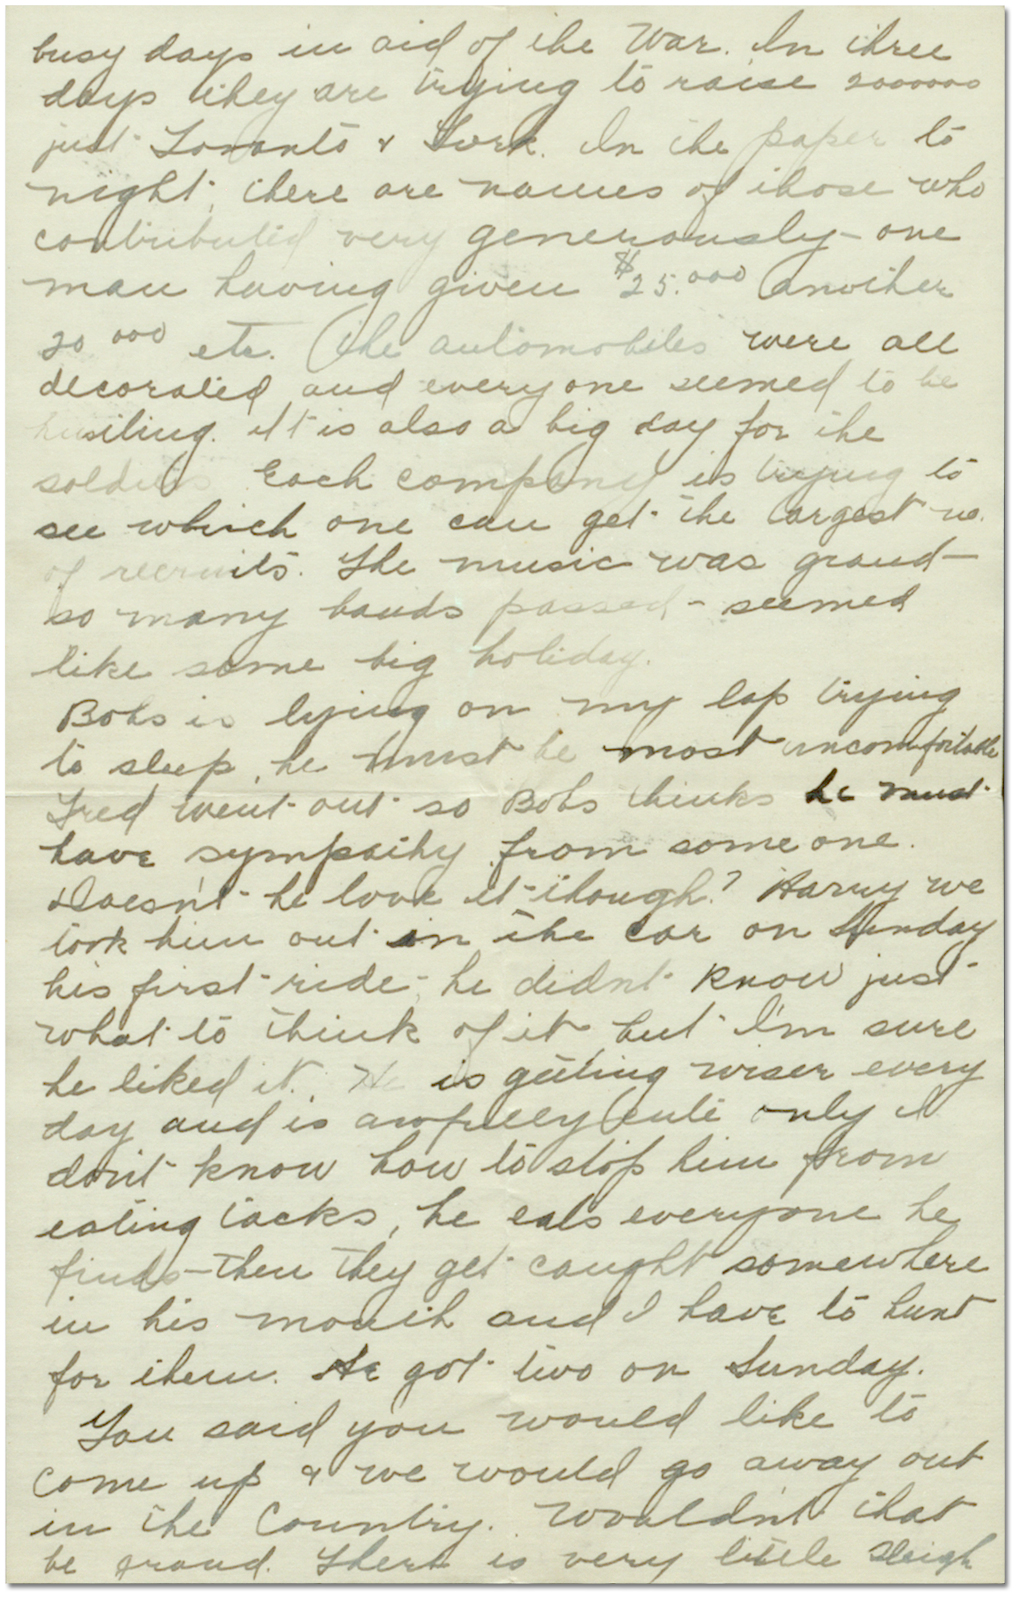 Lettre de Sadie Arbuckle à Harry Mason , le 25 janvier 1916